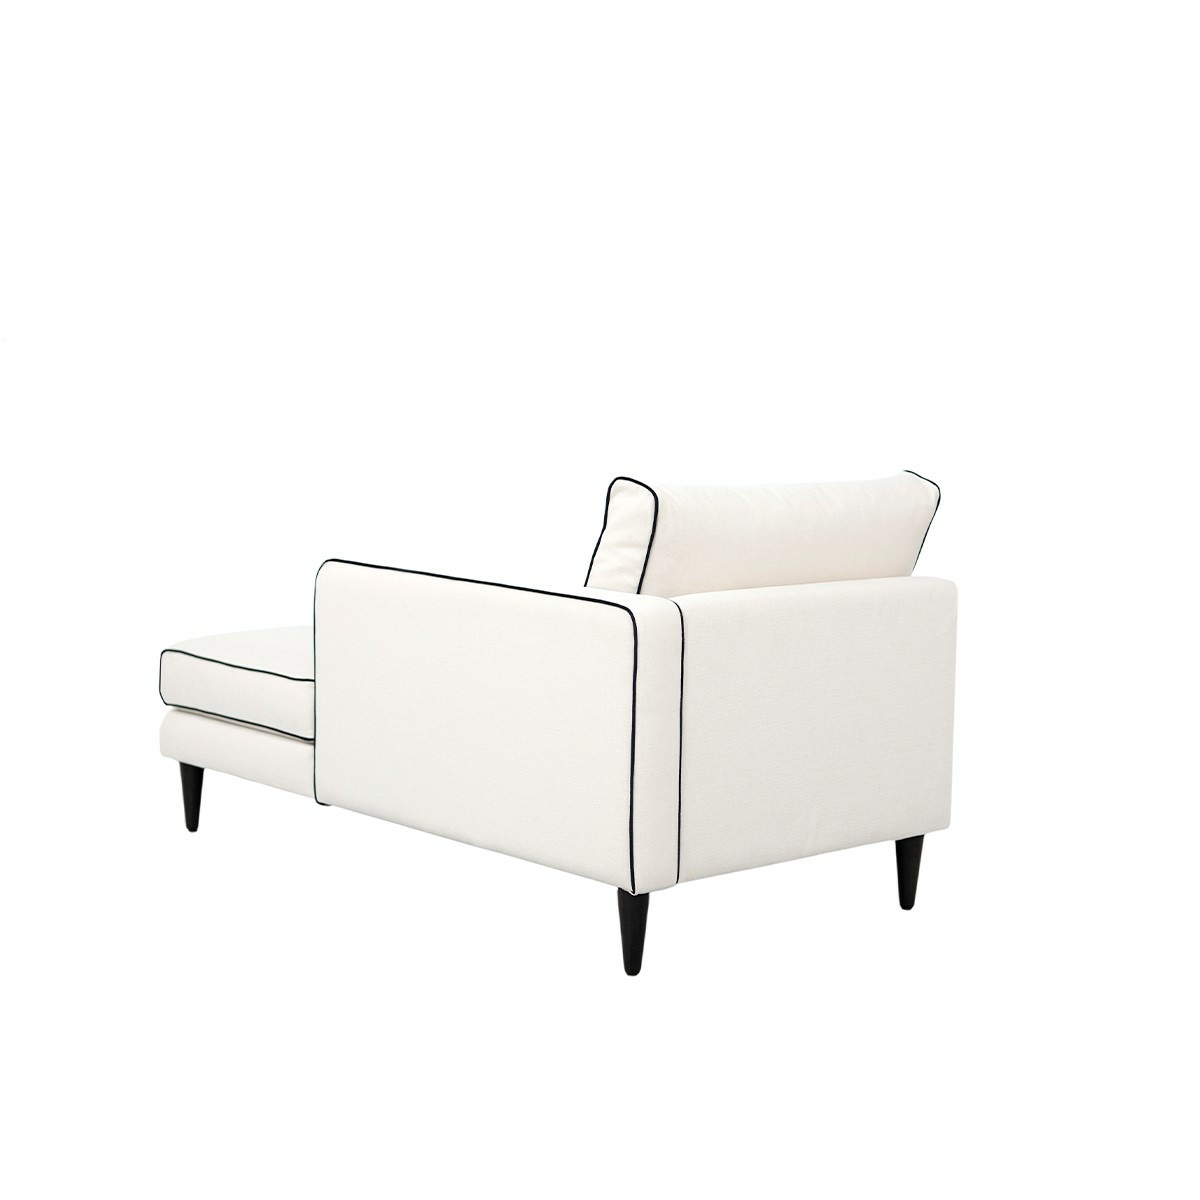 Noa sofa - Right armrest, L150 x P80 x H75 cm - Cotton - image 5